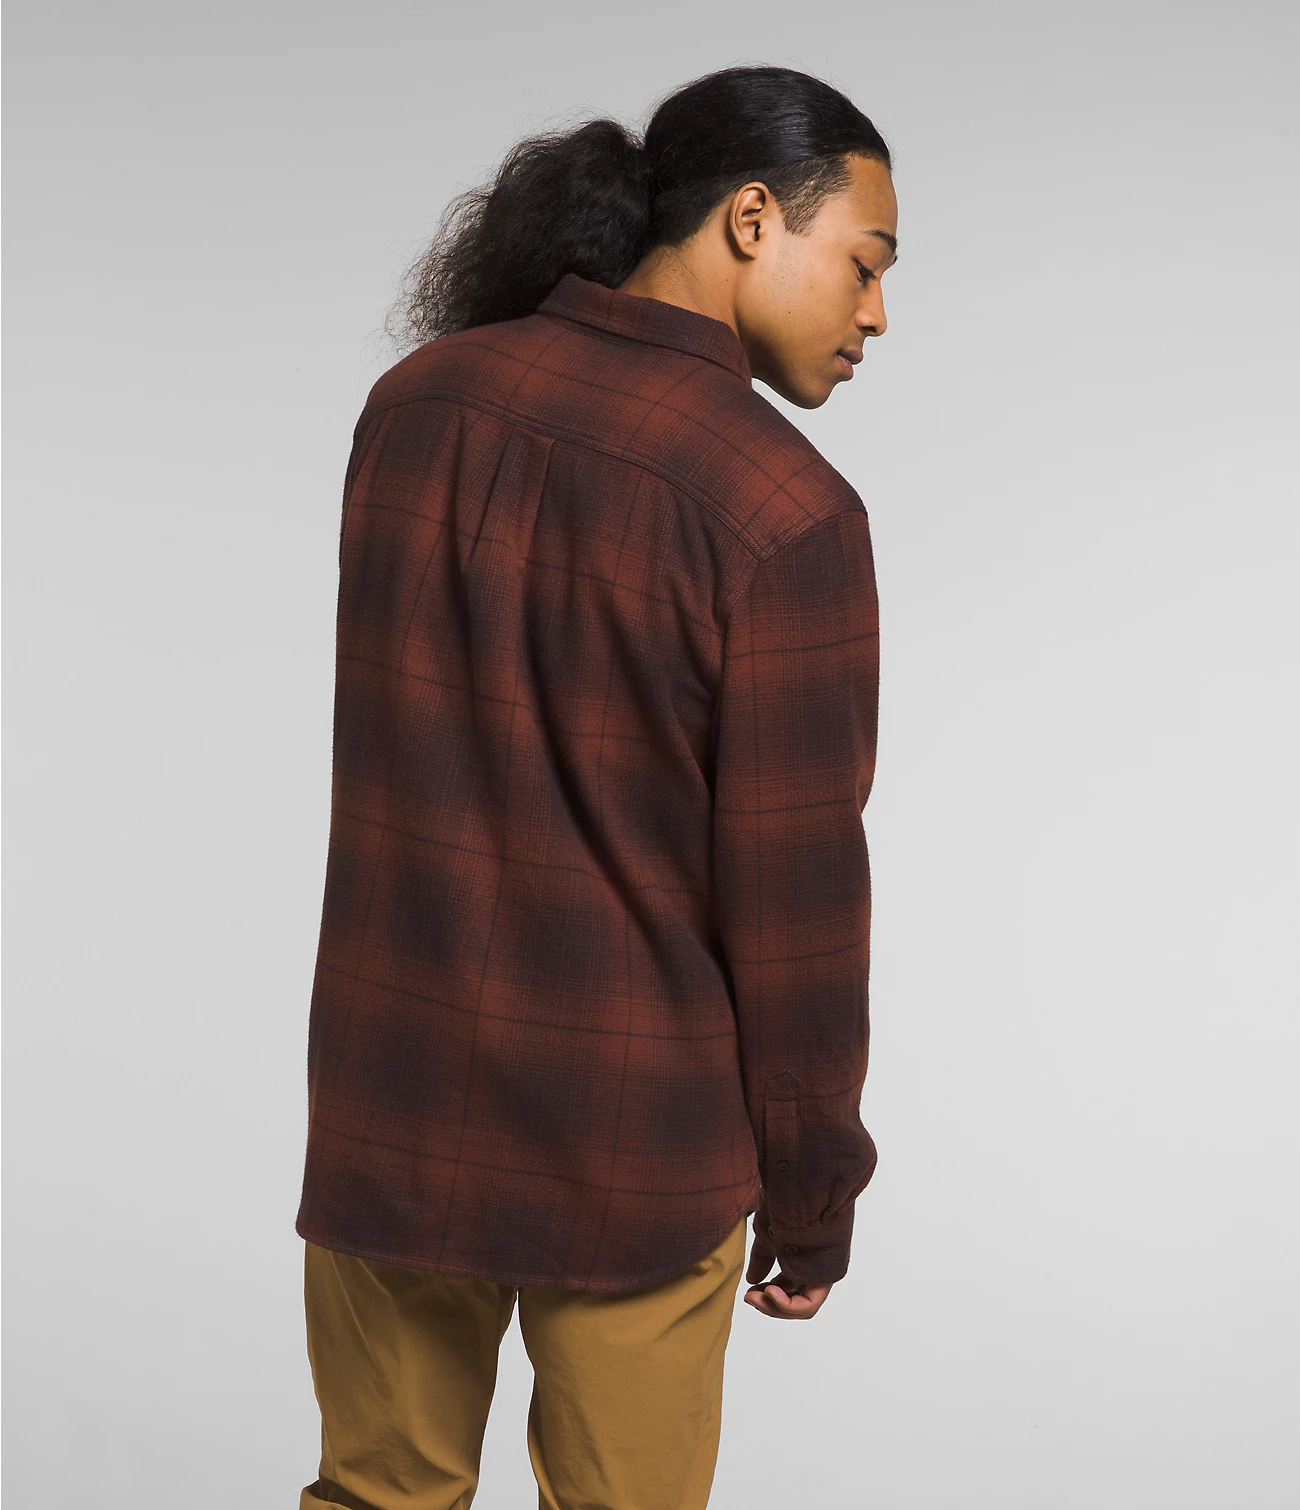 Men’s Arroyo Flannel Shirt